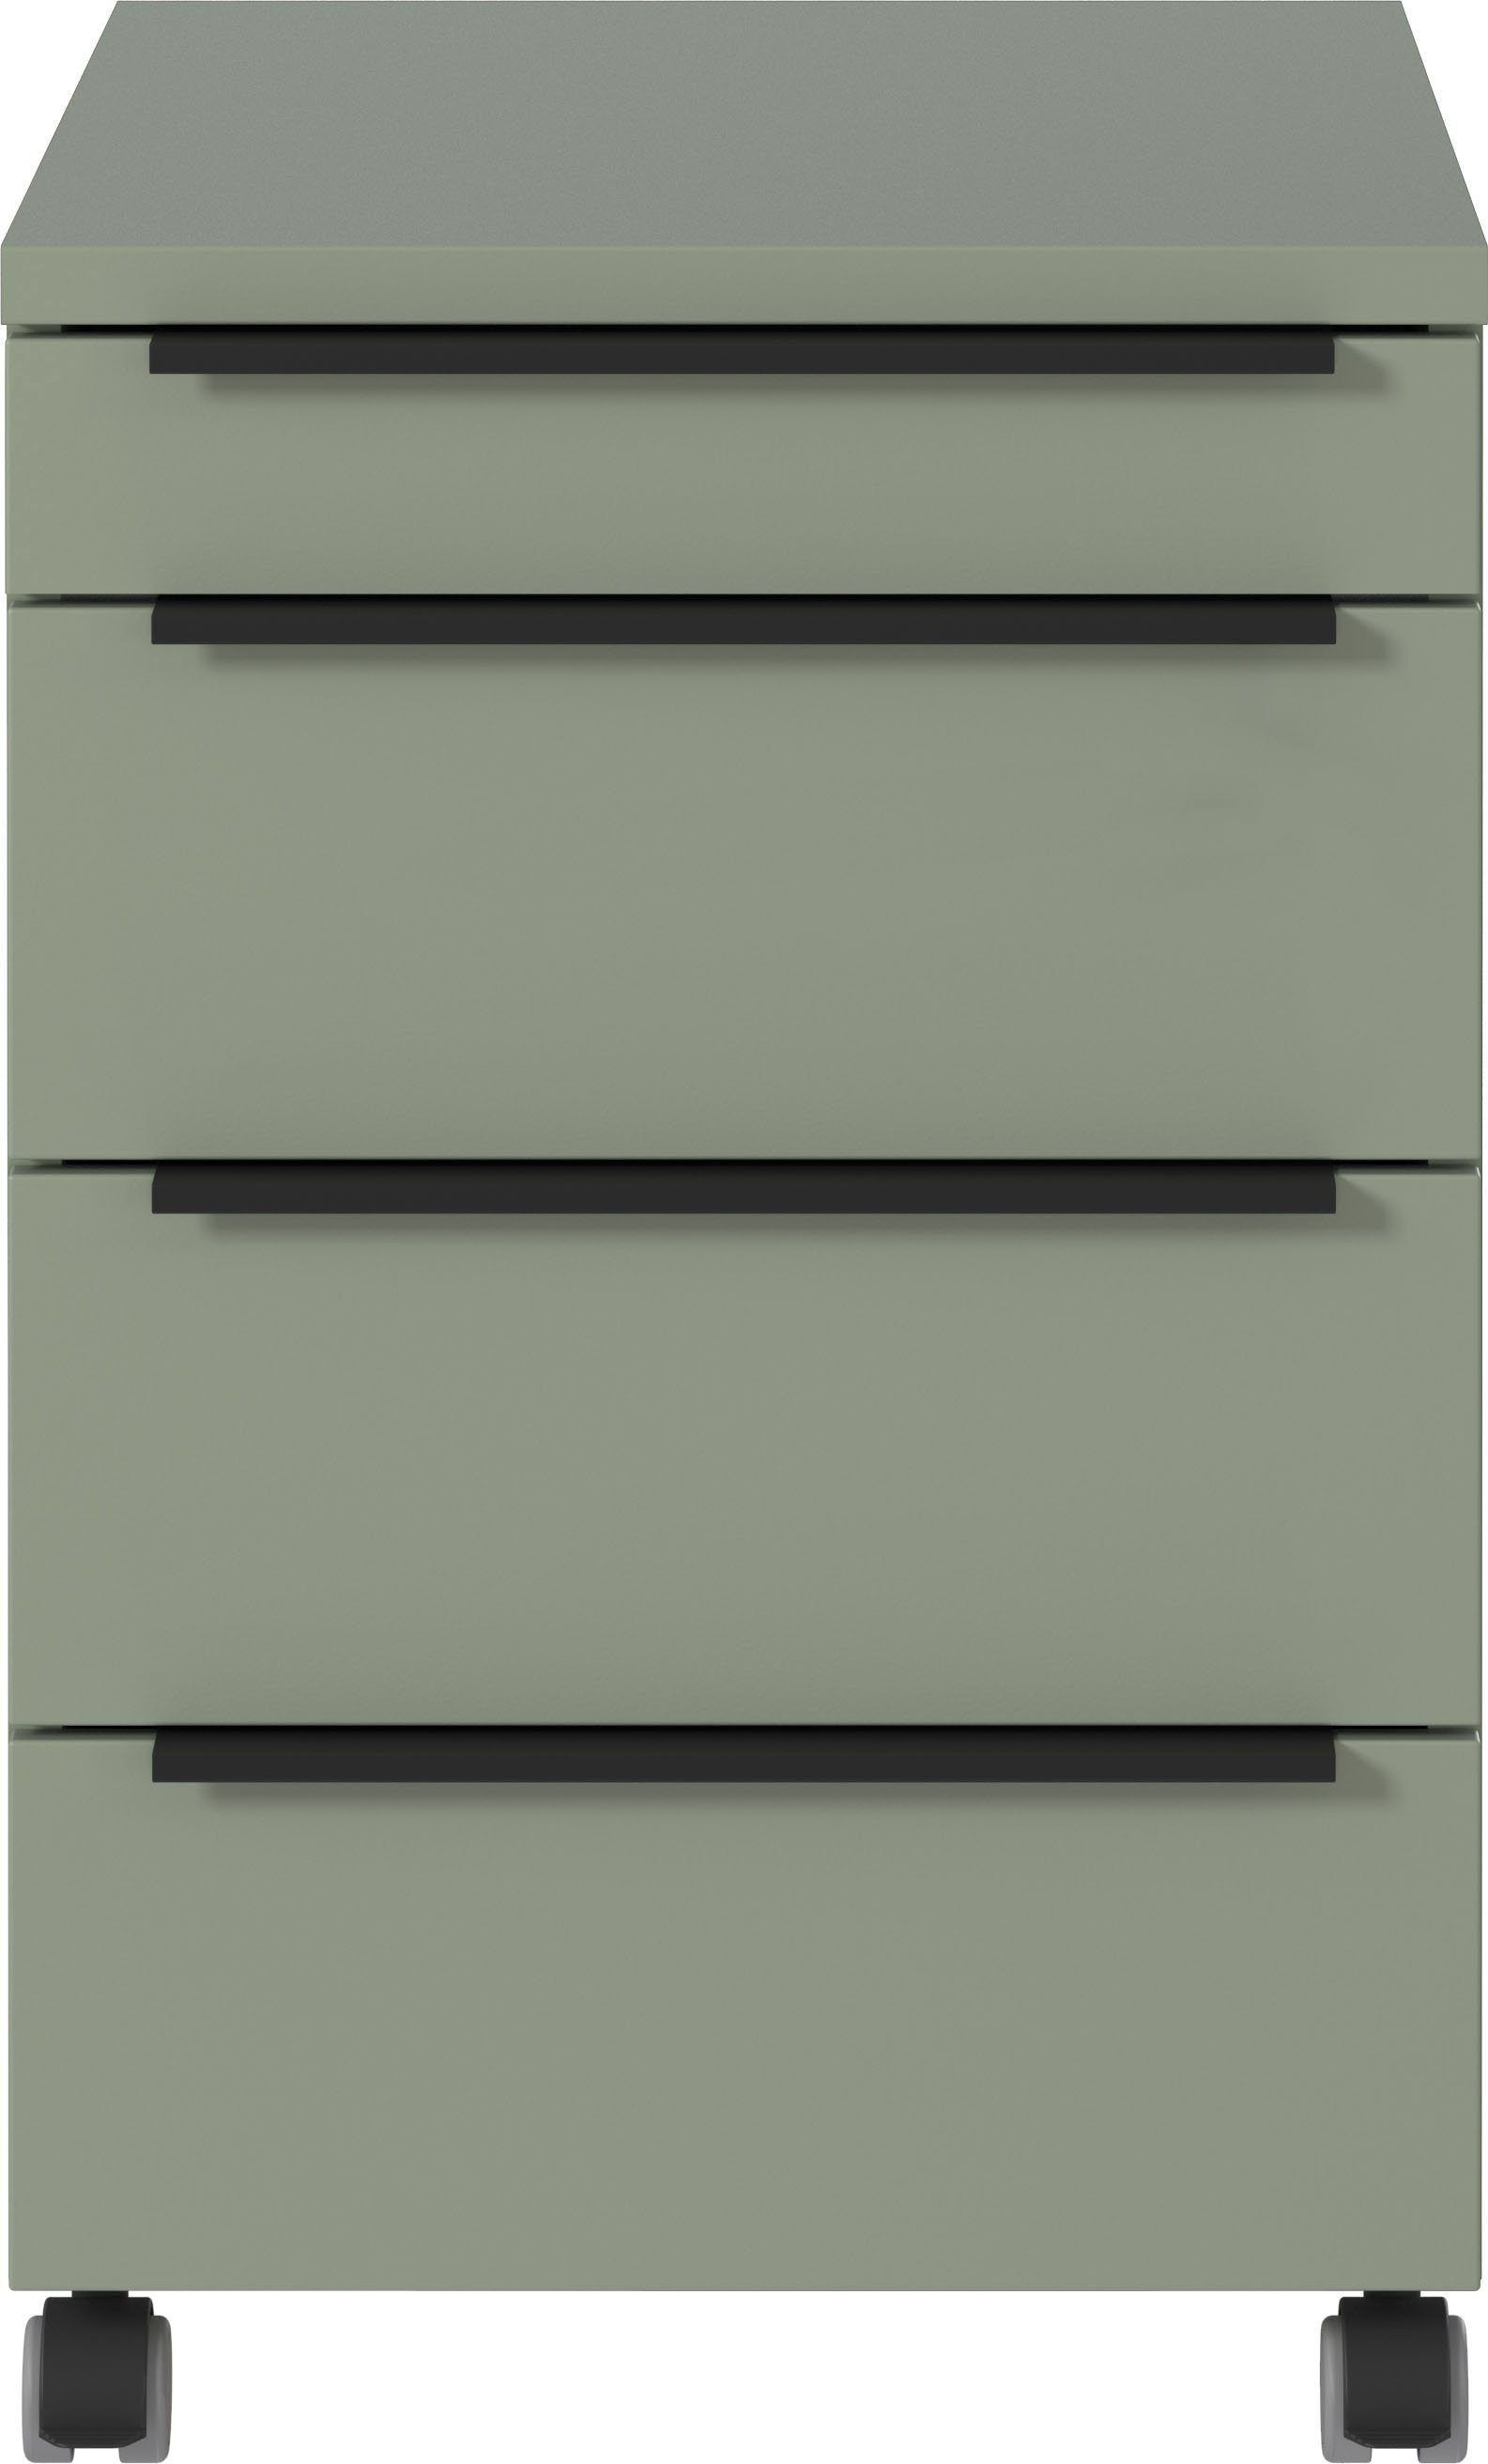 GERMANIA Rollcontainer Mailand, mit 4 Schubladen, Utensilienfach, optional abschließbar, 42x63 cm, Made in Germany